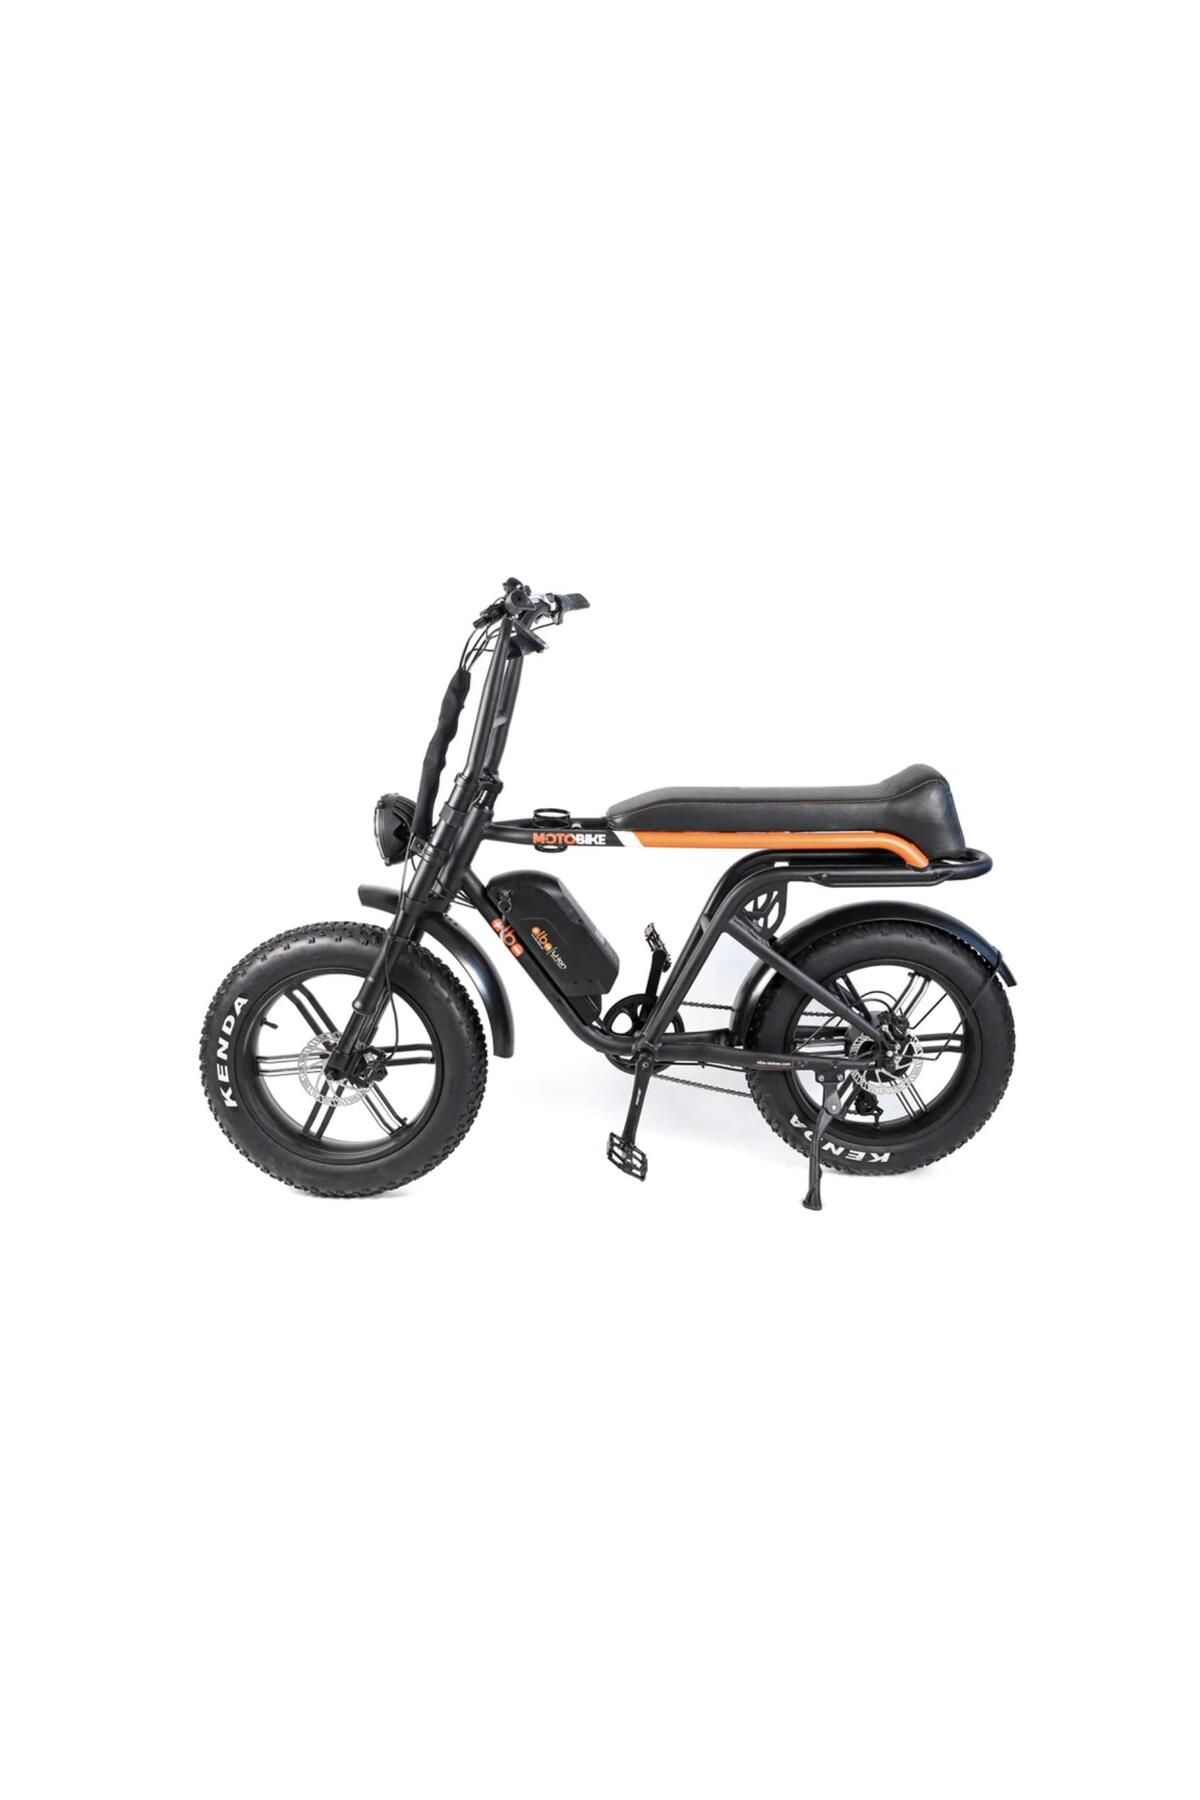 Alba Elektrikli PRO Motobike 20 Jant HD Fren 48V 16Ah Batarya Elektrikli Bisiklet